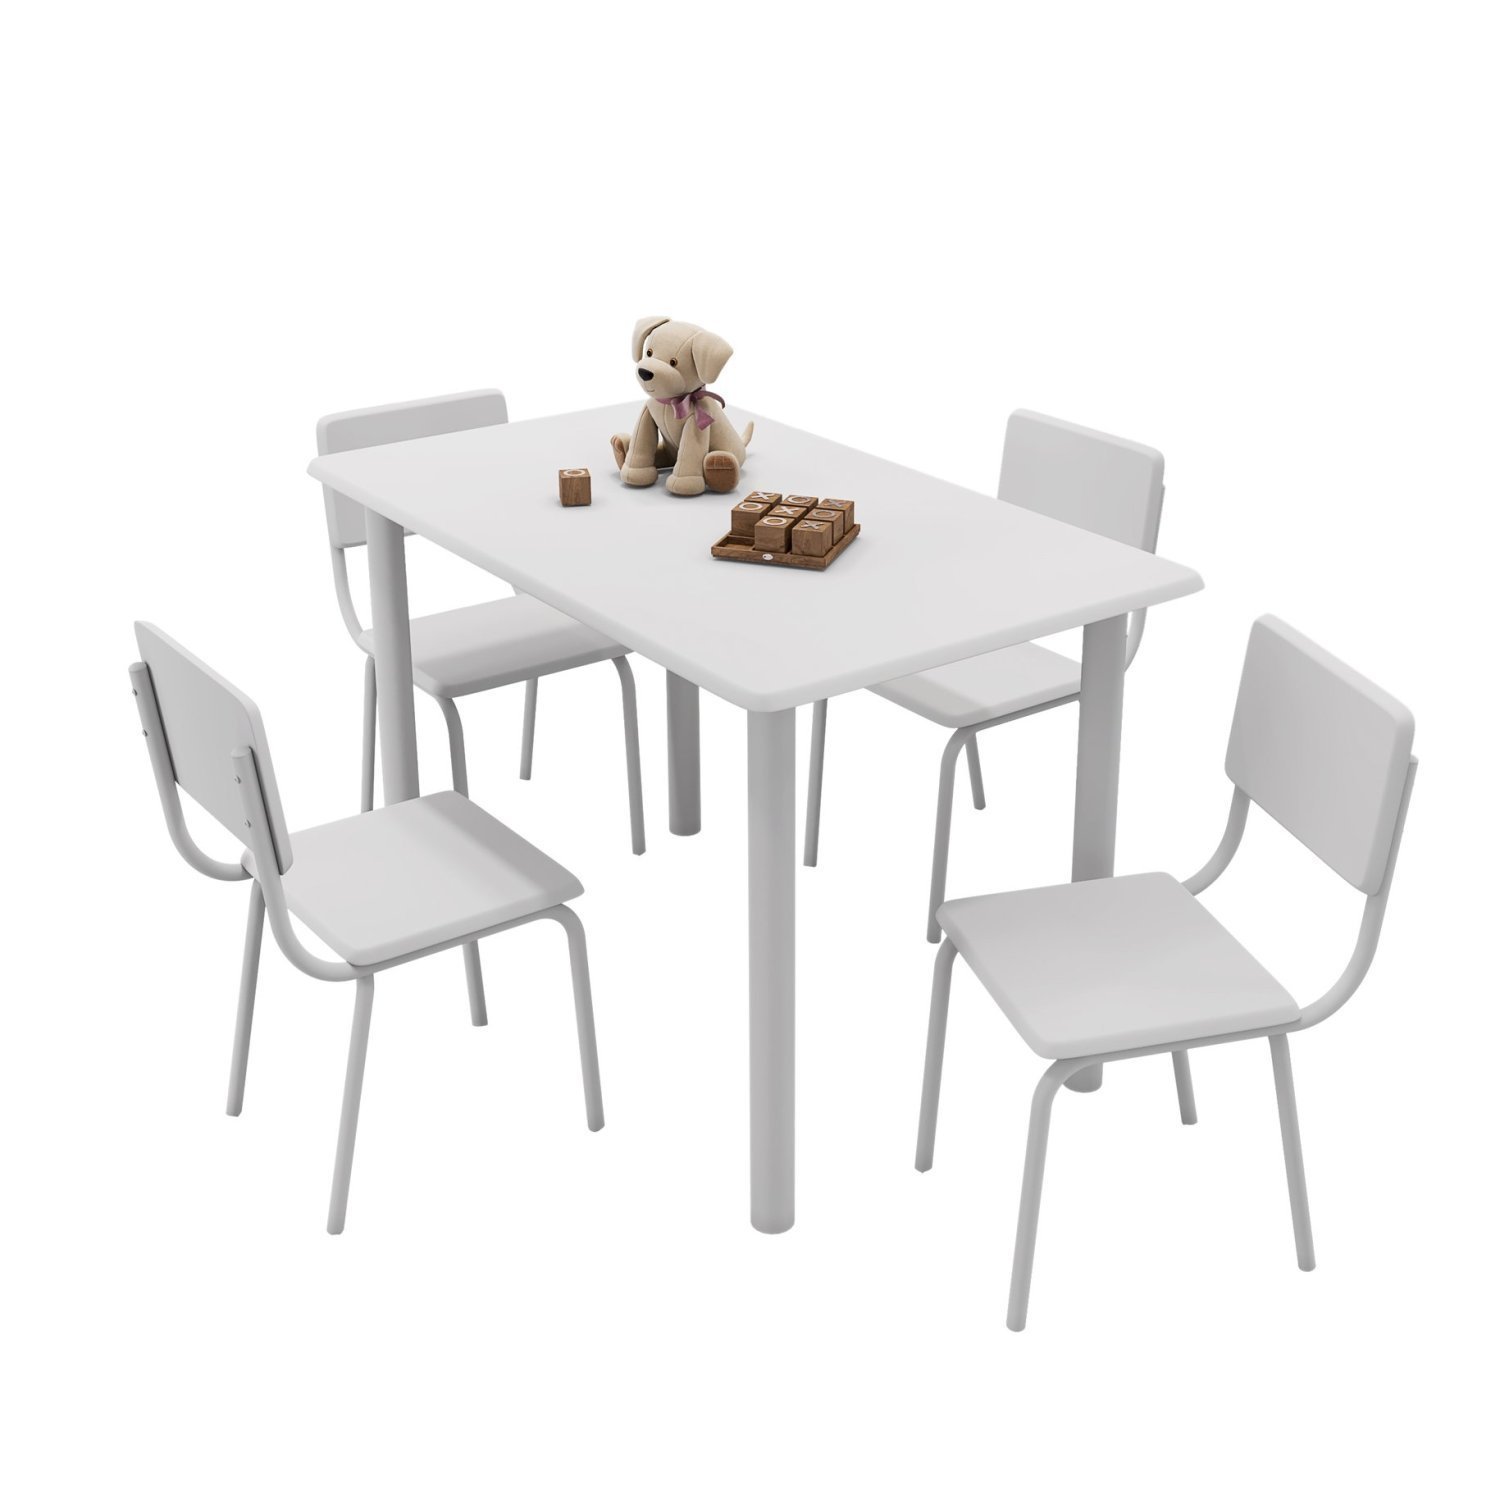 Conjunto Infantil com Mesa 75x50cm com 4 Cadeiras Laura - 2